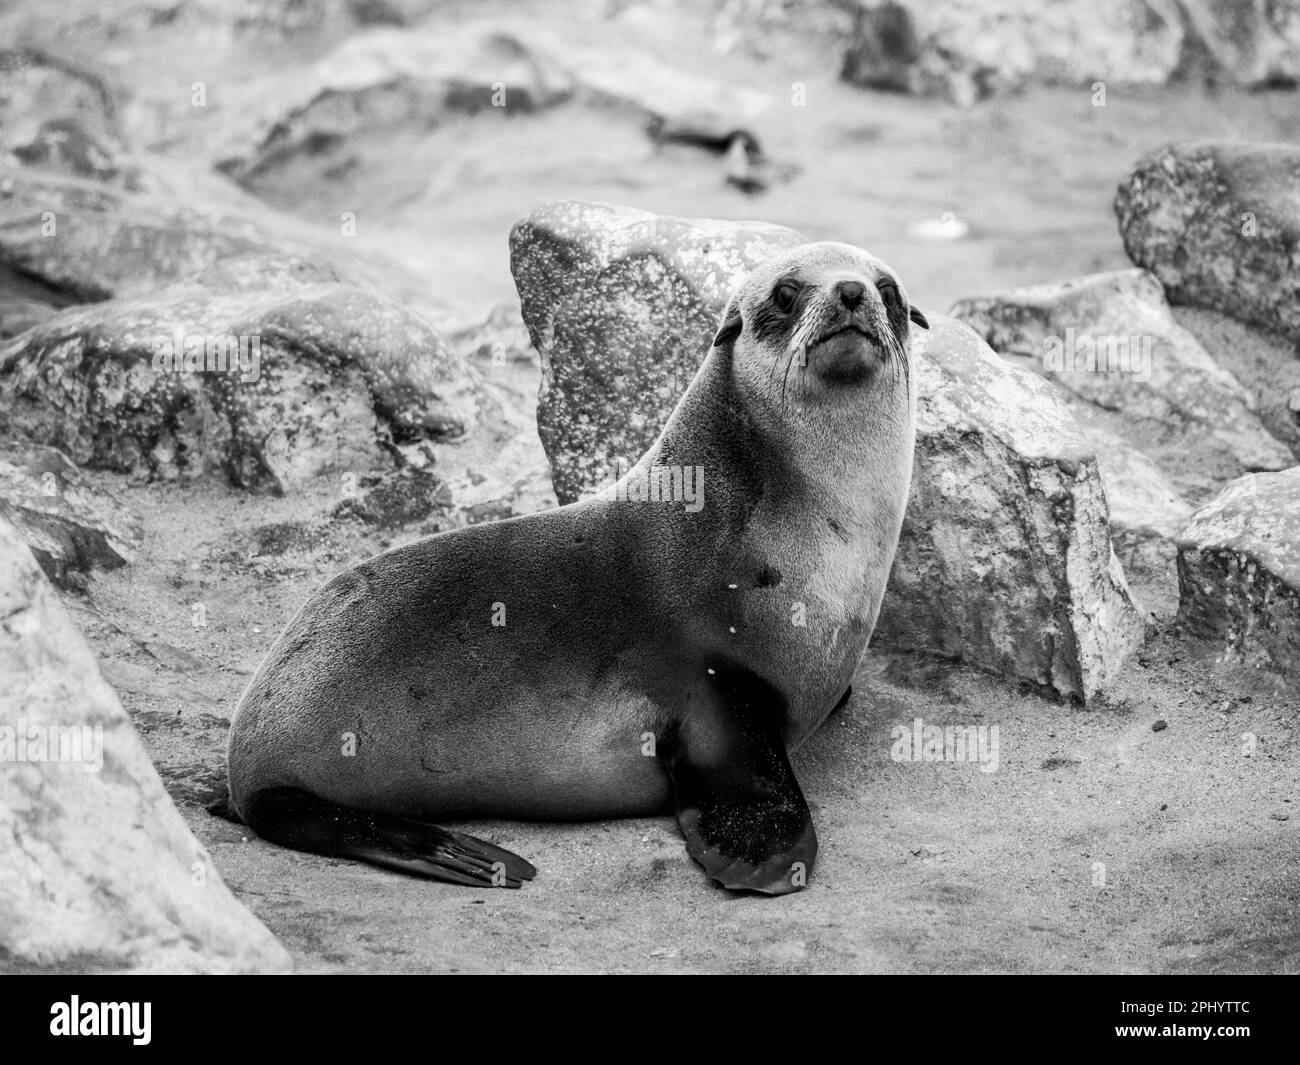 Giovane foca marrone, Arctocephalus pusillus, colonia a Cape Cross, sulla Skeleton Coast dell'Oceano Atlantico, vicino a Henties Bay in Namibia, Africa. Fotografia in bianco e nero. Foto Stock